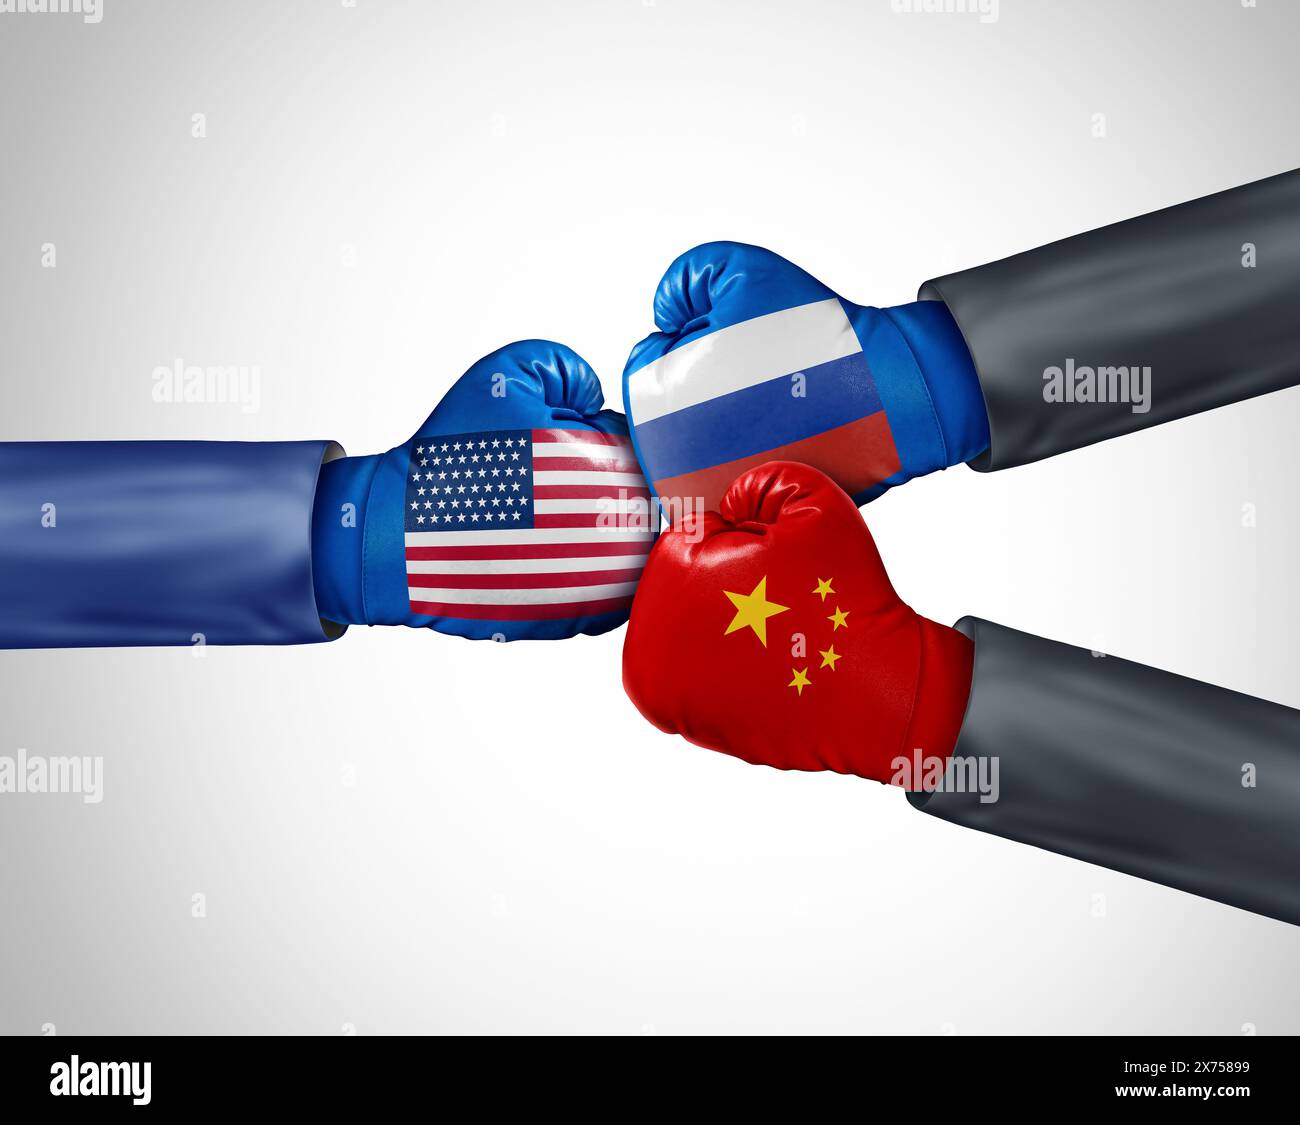 USA contro Russia Cina come partenariato strategico economico e politico e alleanza di politica estera per competere con le politiche governative americane Foto Stock